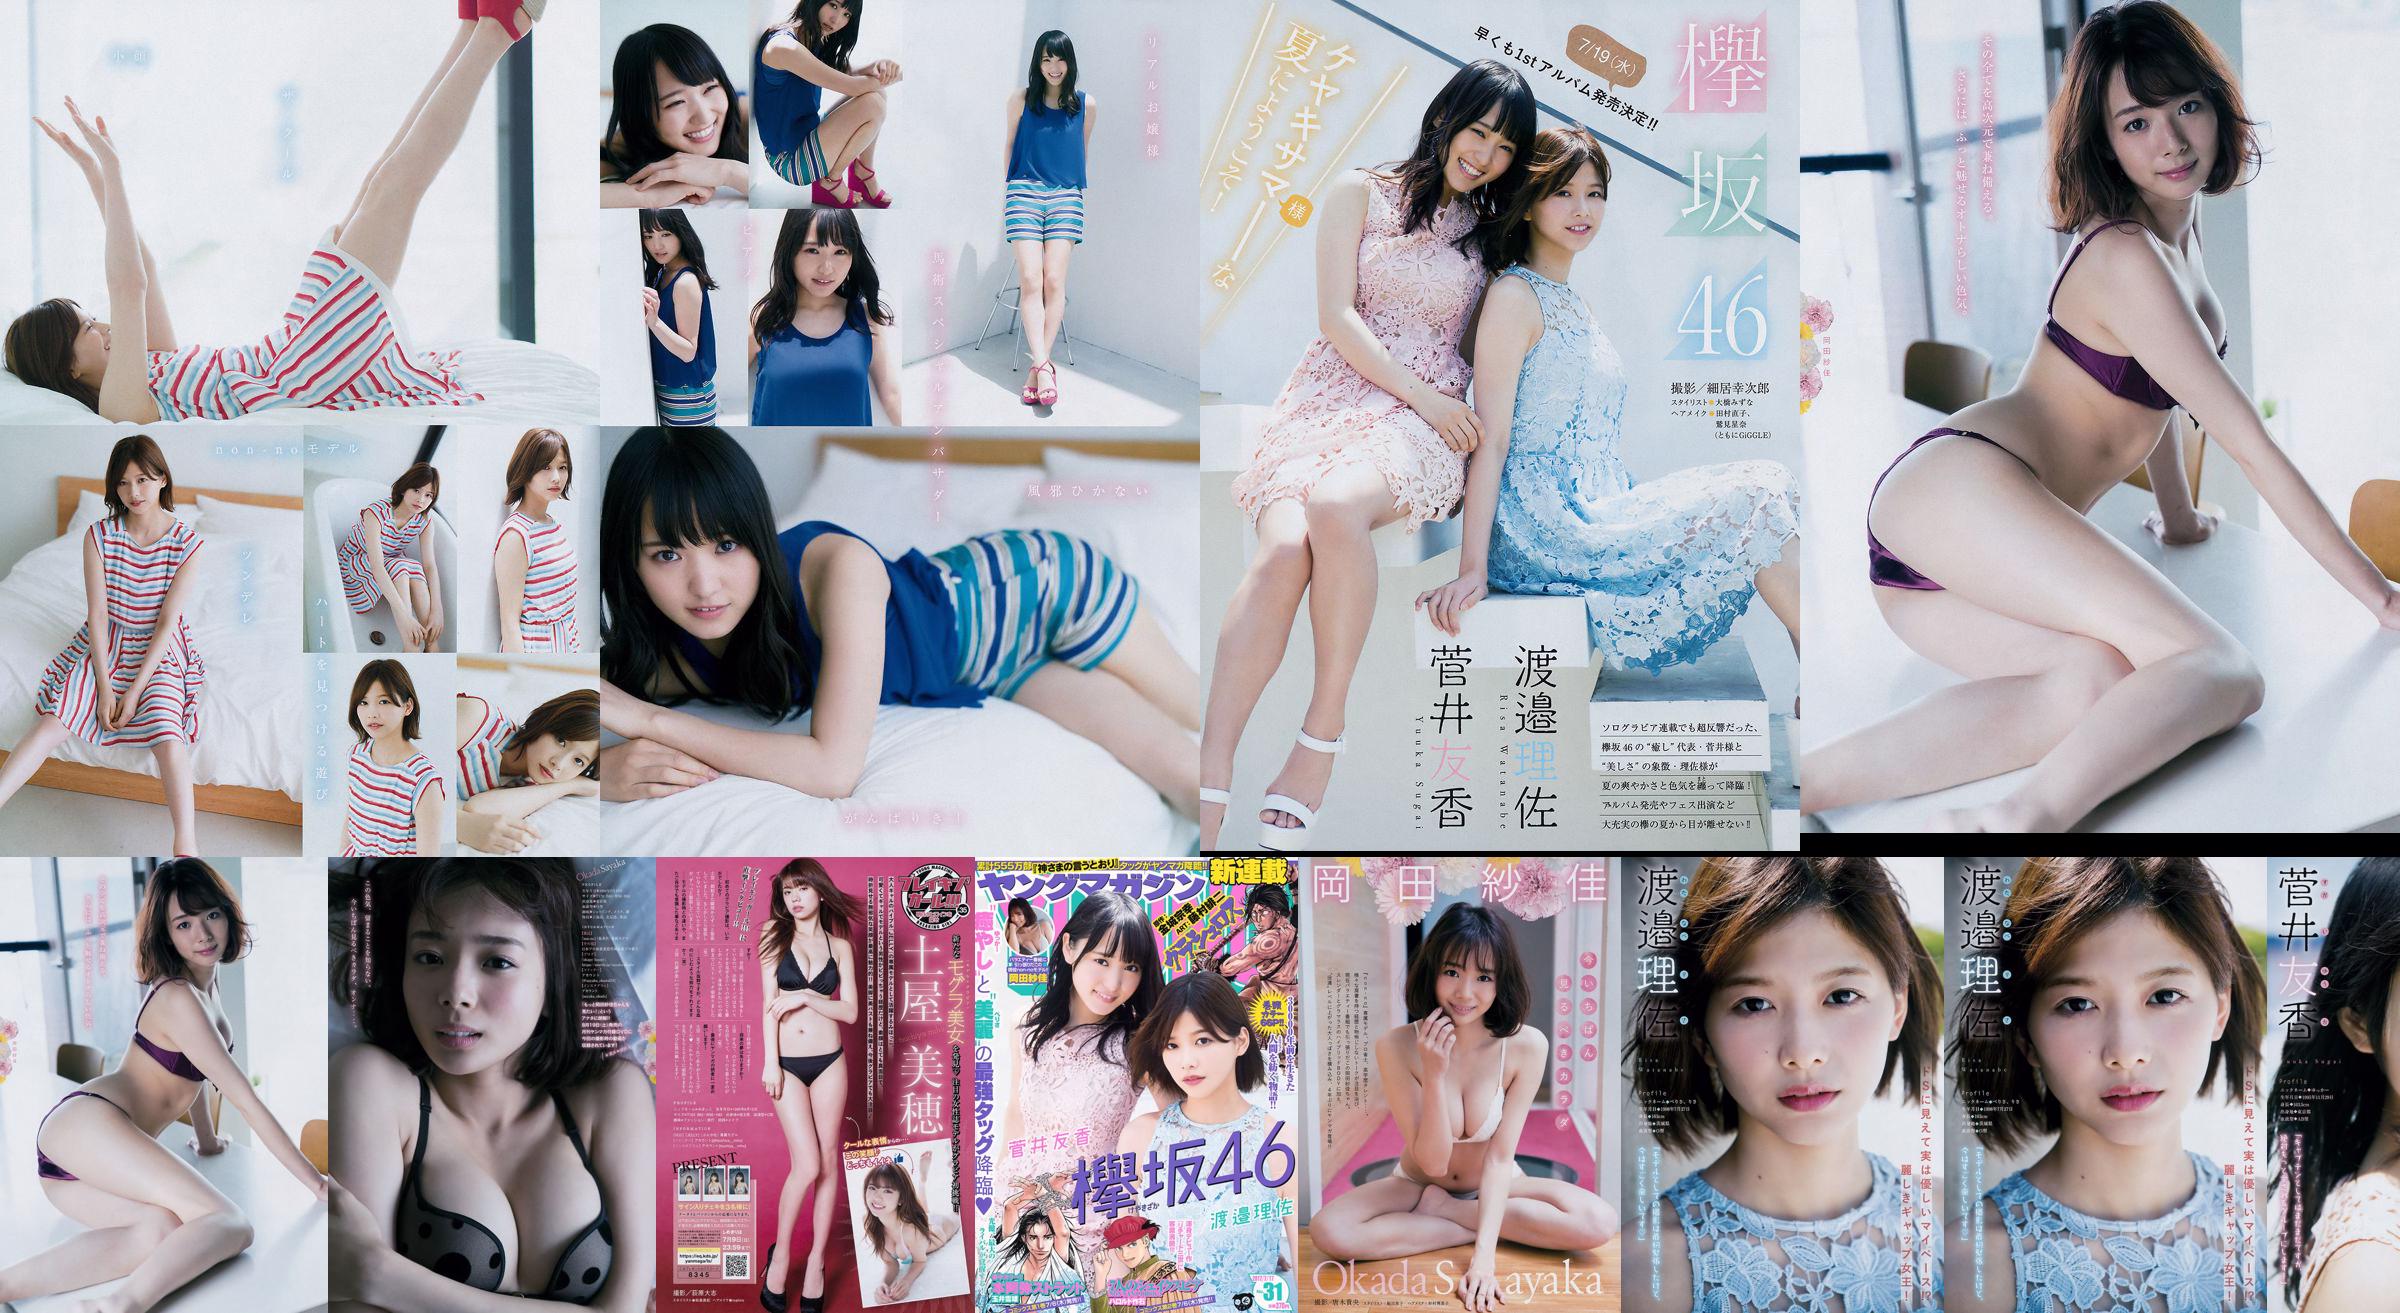 [Young Magazine] Watanabe Risa, Sugai Yuka, Okada Saika 2017 No.31 Photo Magazine No.3a4fea Página 3